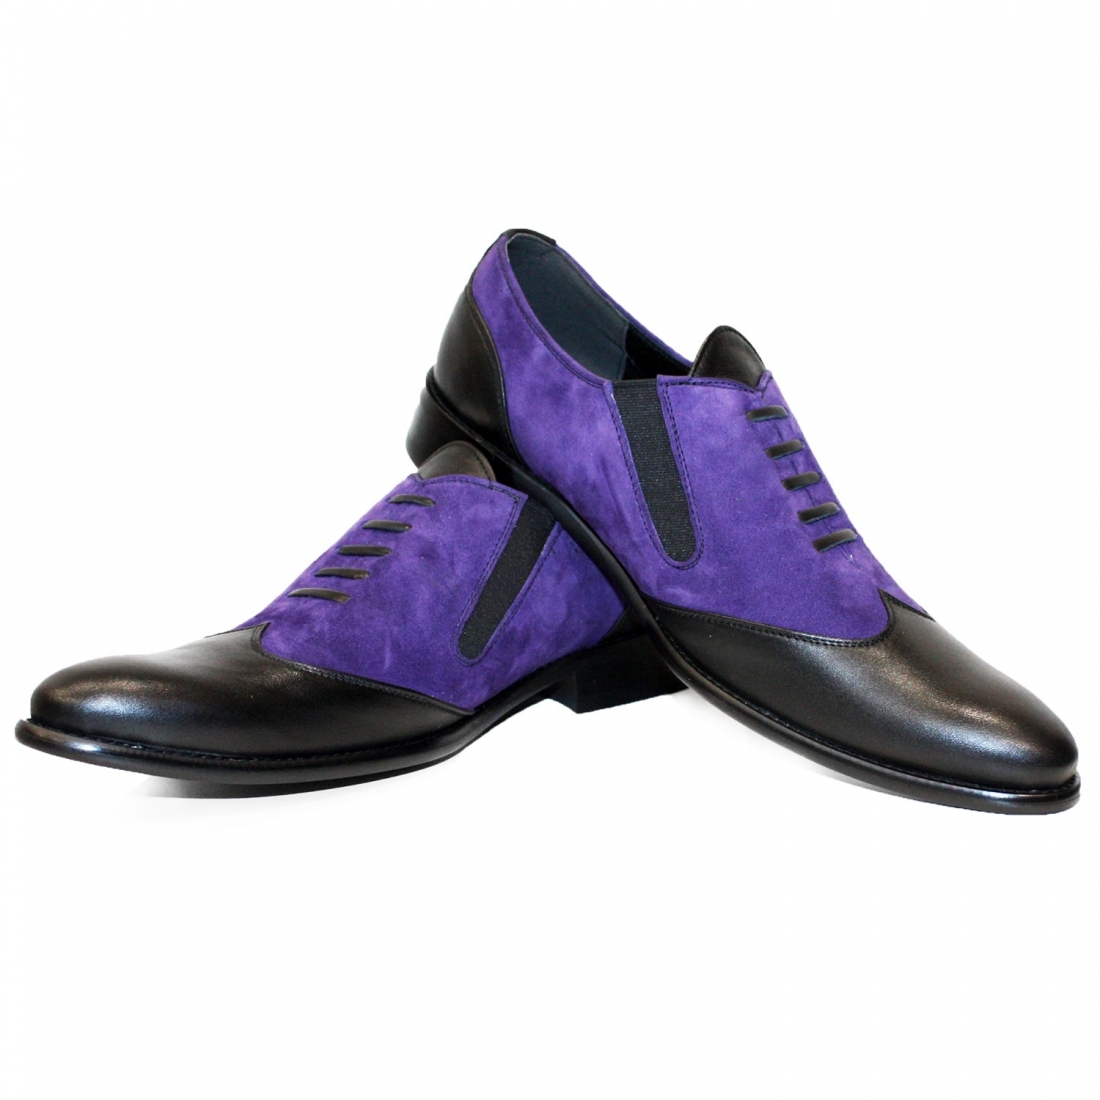 Modello Bamaro - Zapatillas Sin Cordones - Handmade Colorful Italian Leather Shoes